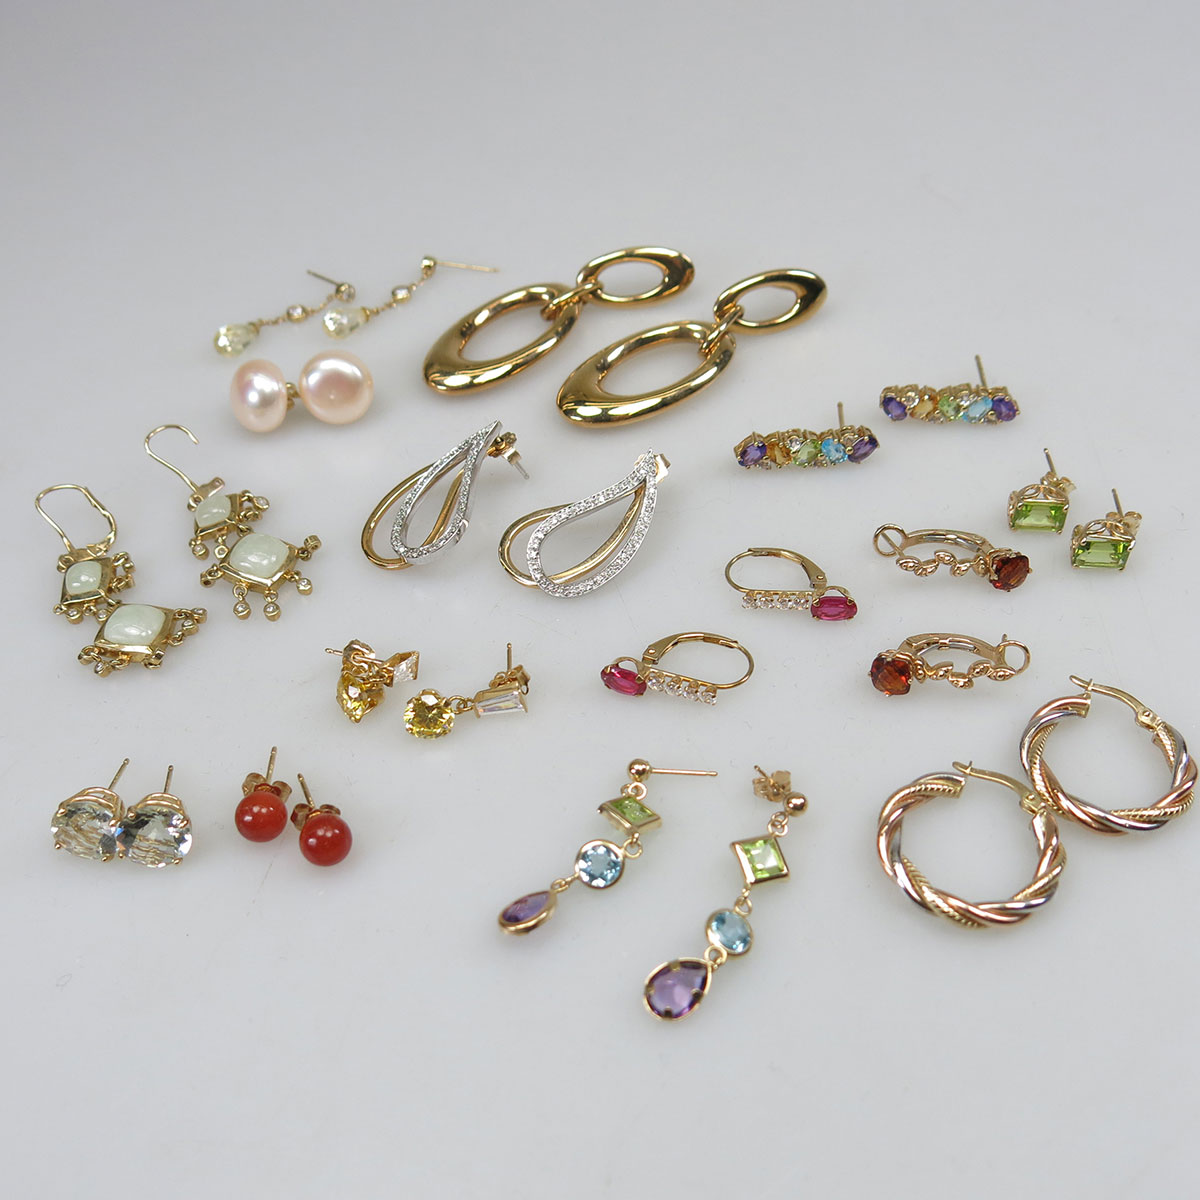 16 Pairs Of 14k Gold Earrings